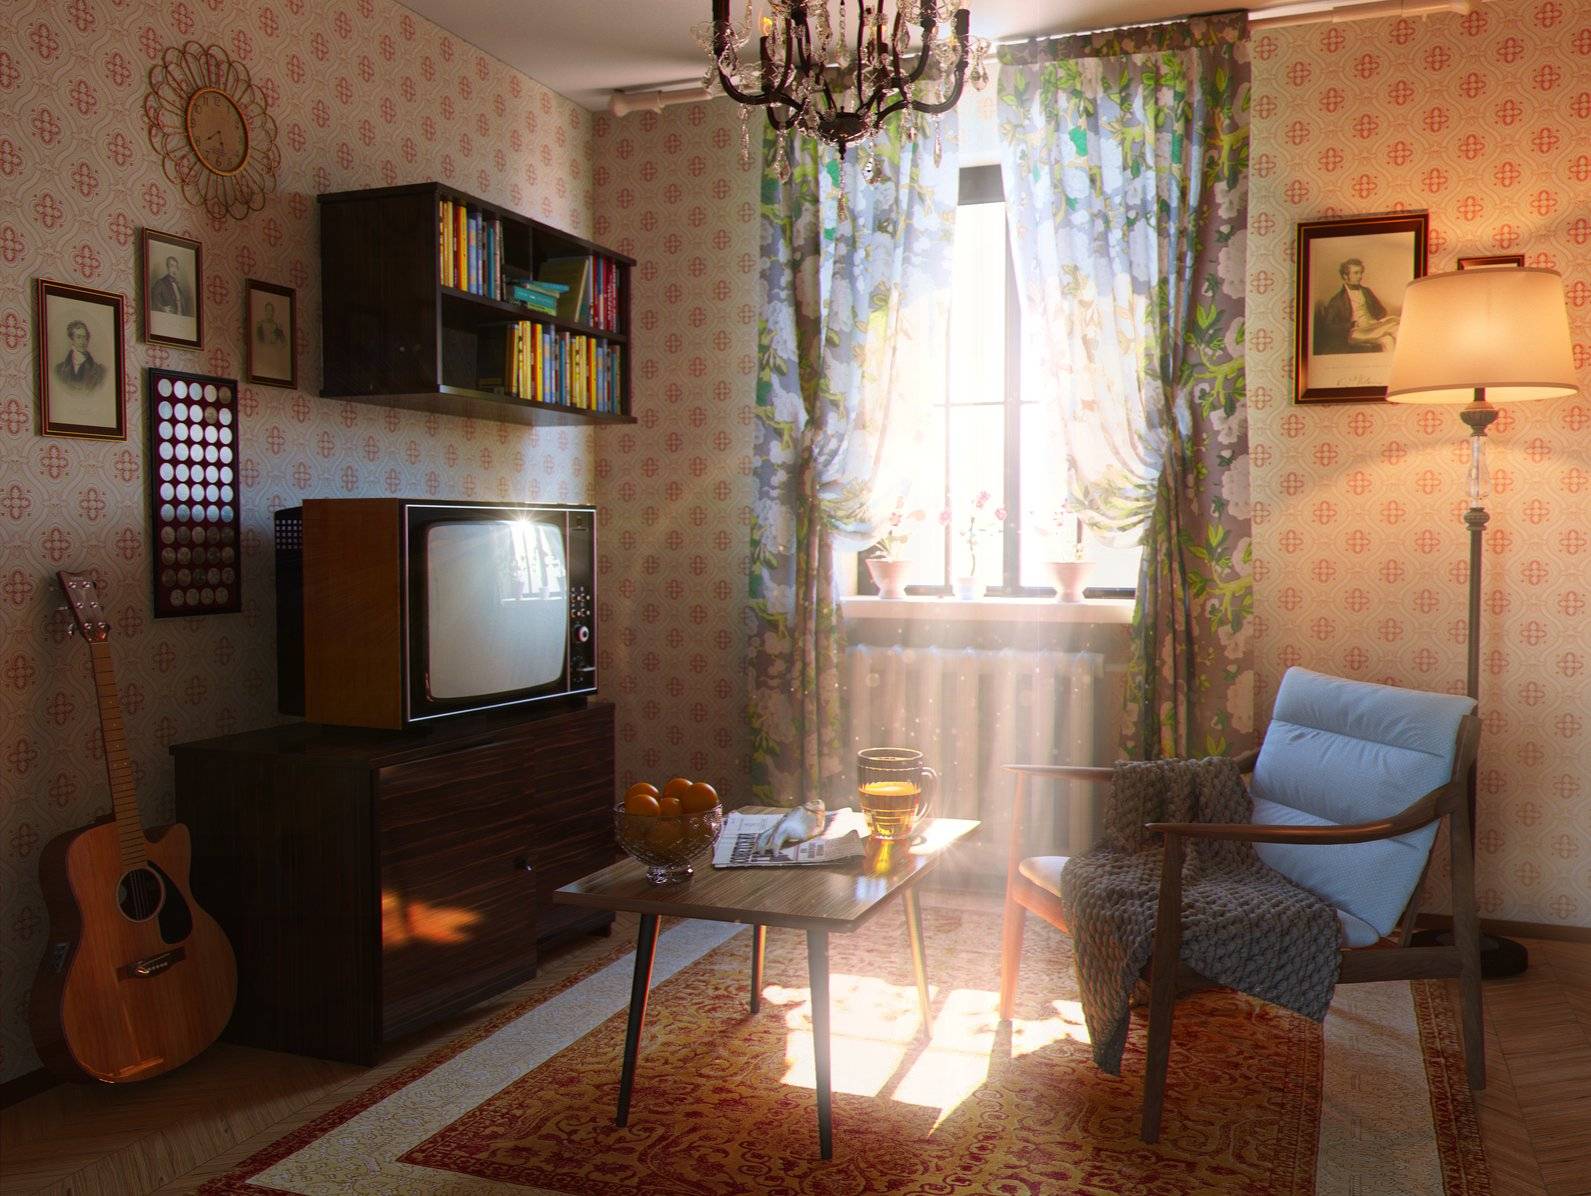 Мебель в ссср: как были обставлены советские квартиры?